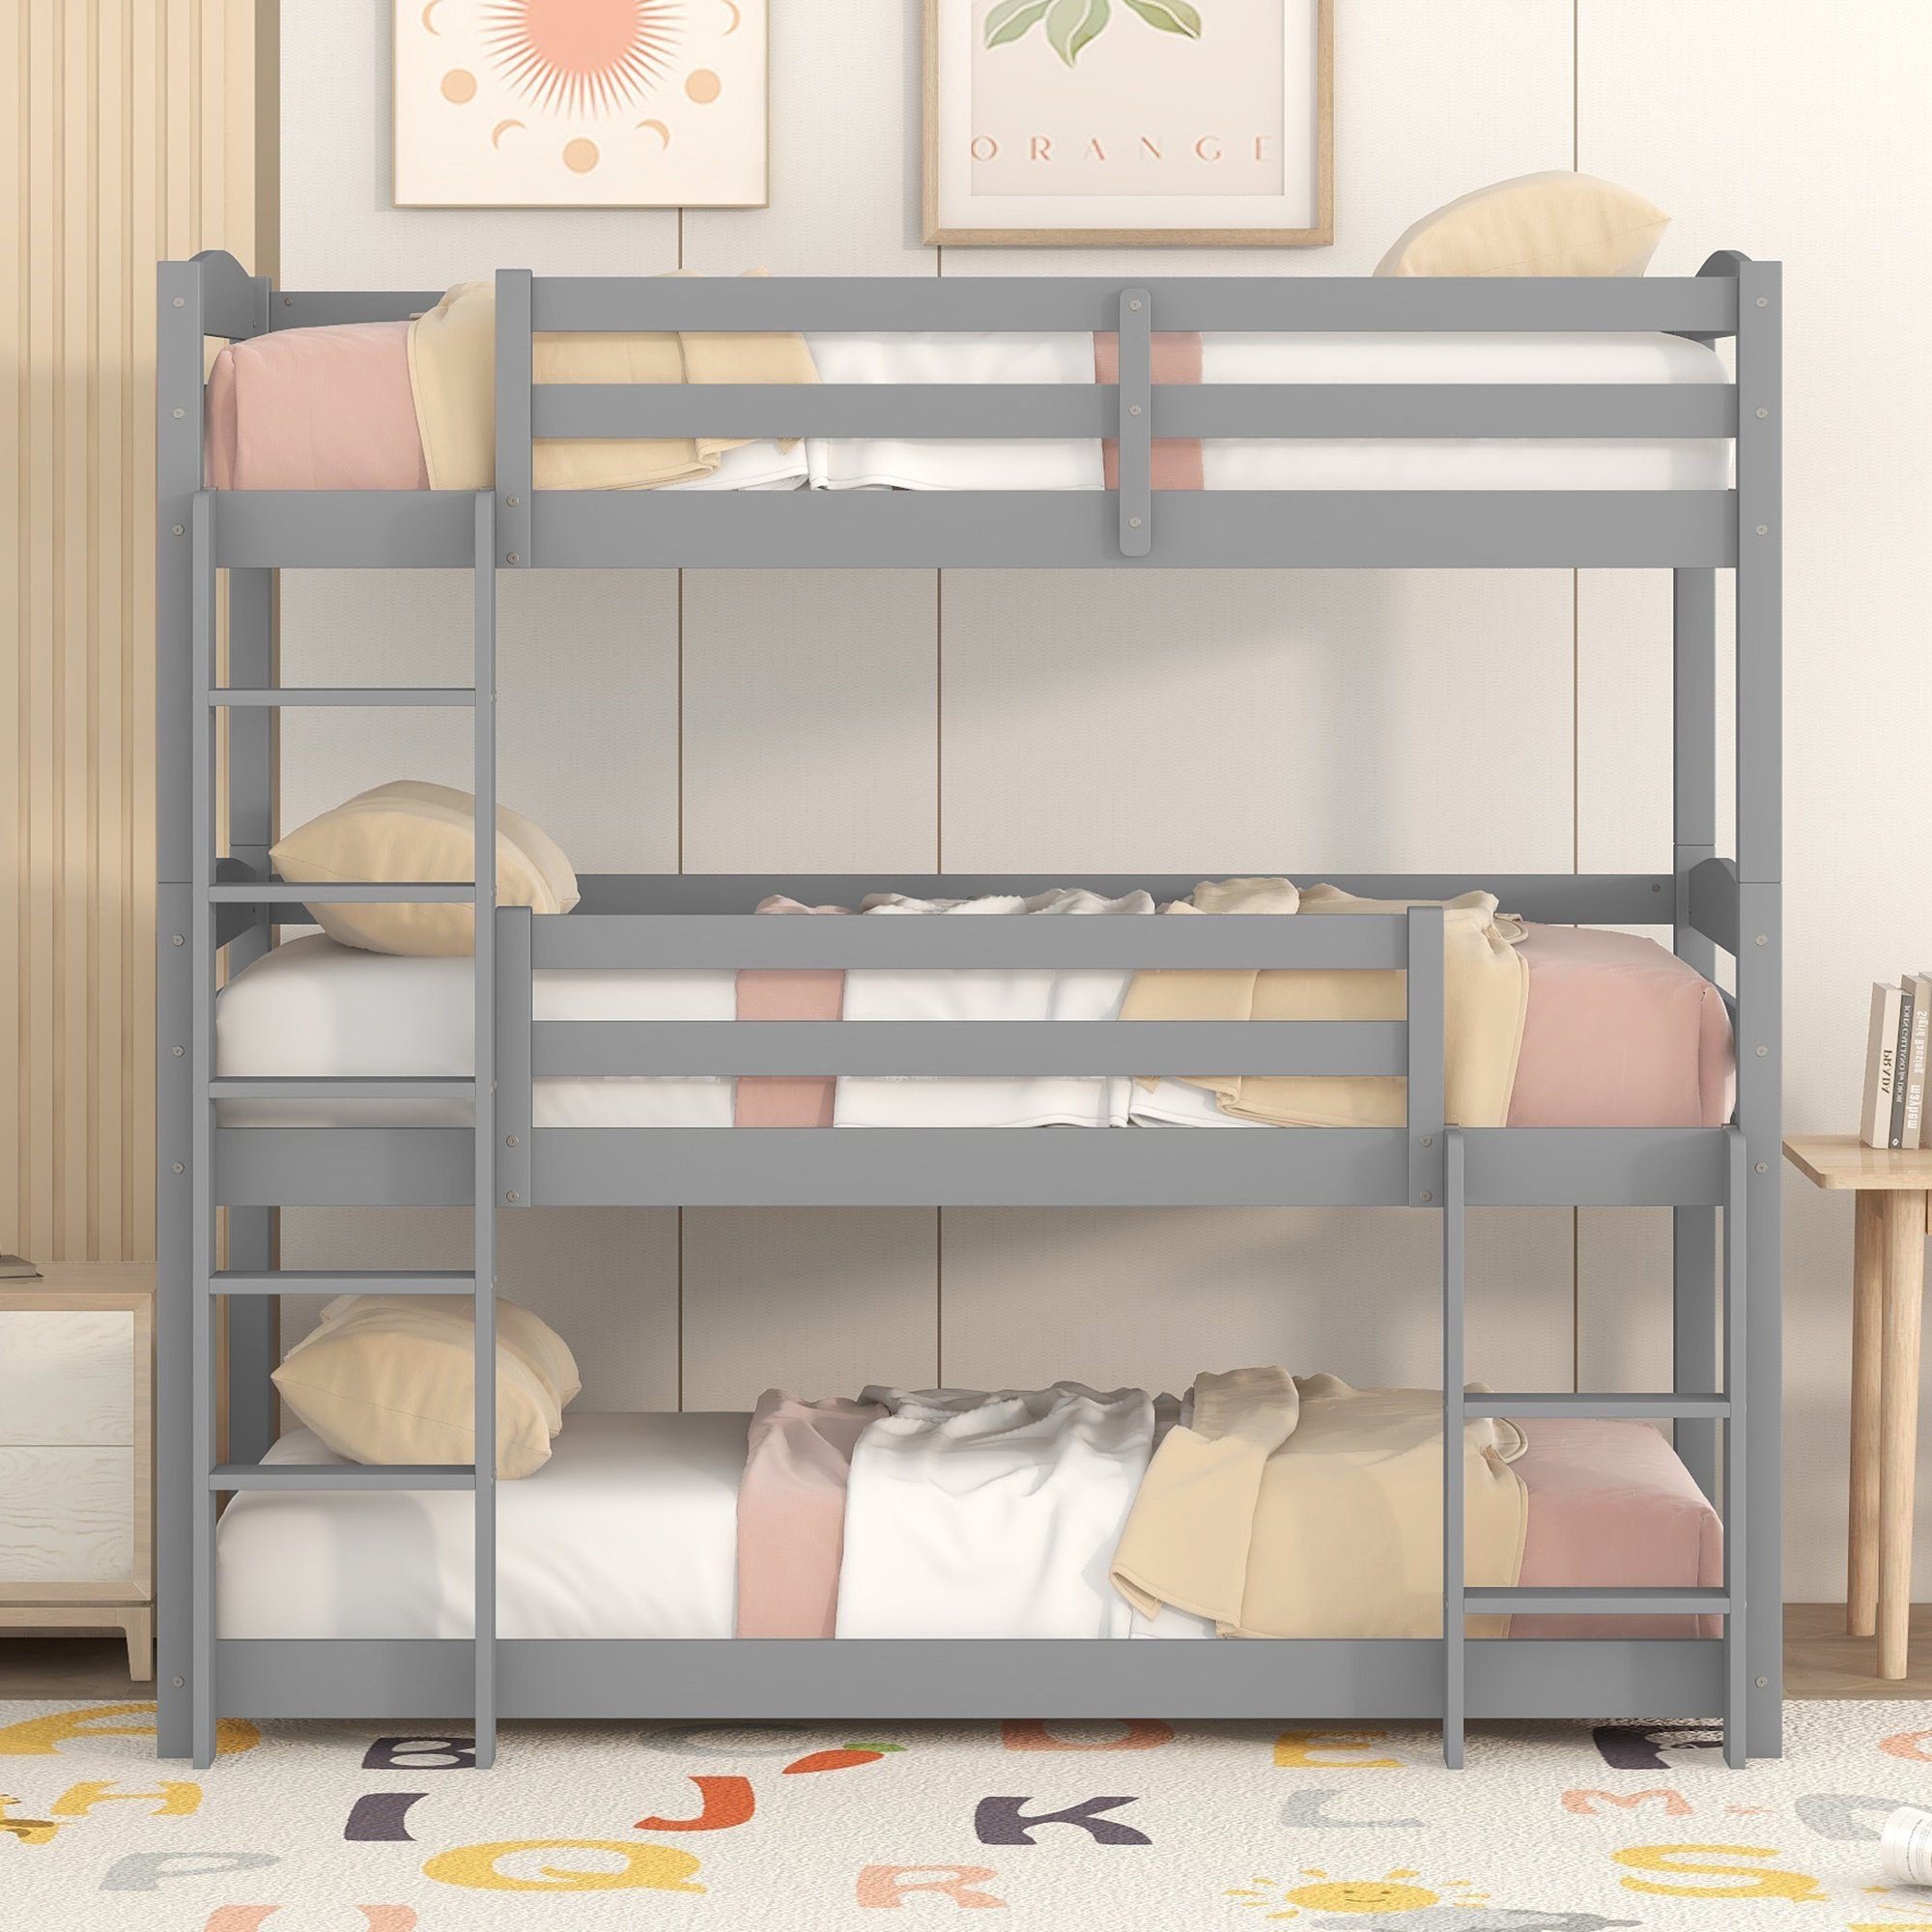 Fangqi Bett 90x200cm großes Dreifach-Einzelbett aus Holz, Kinder Bett